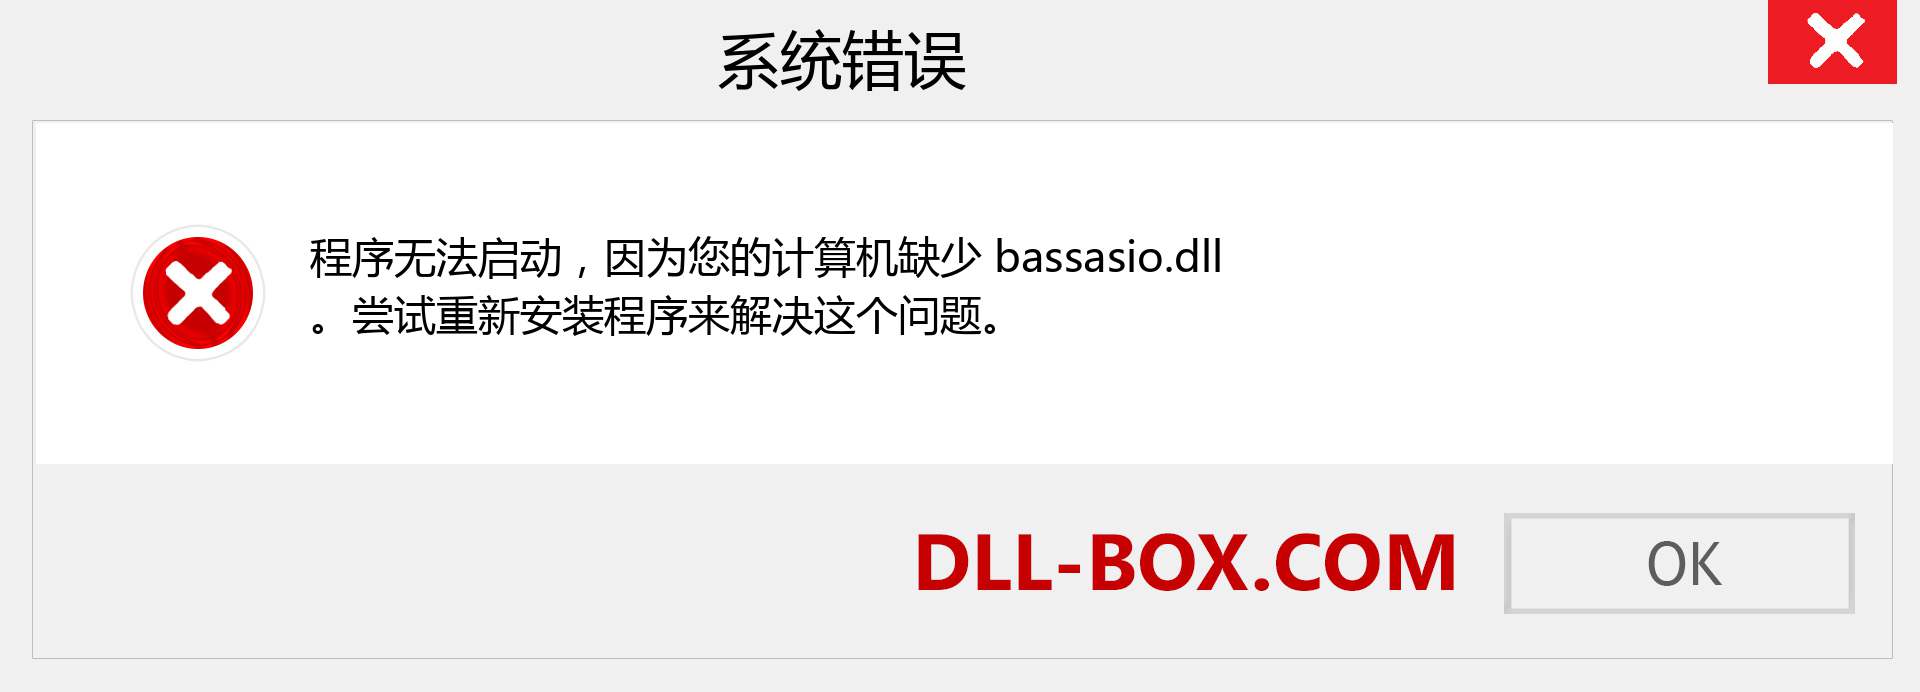 bassasio.dll 文件丢失？。 适用于 Windows 7、8、10 的下载 - 修复 Windows、照片、图像上的 bassasio dll 丢失错误